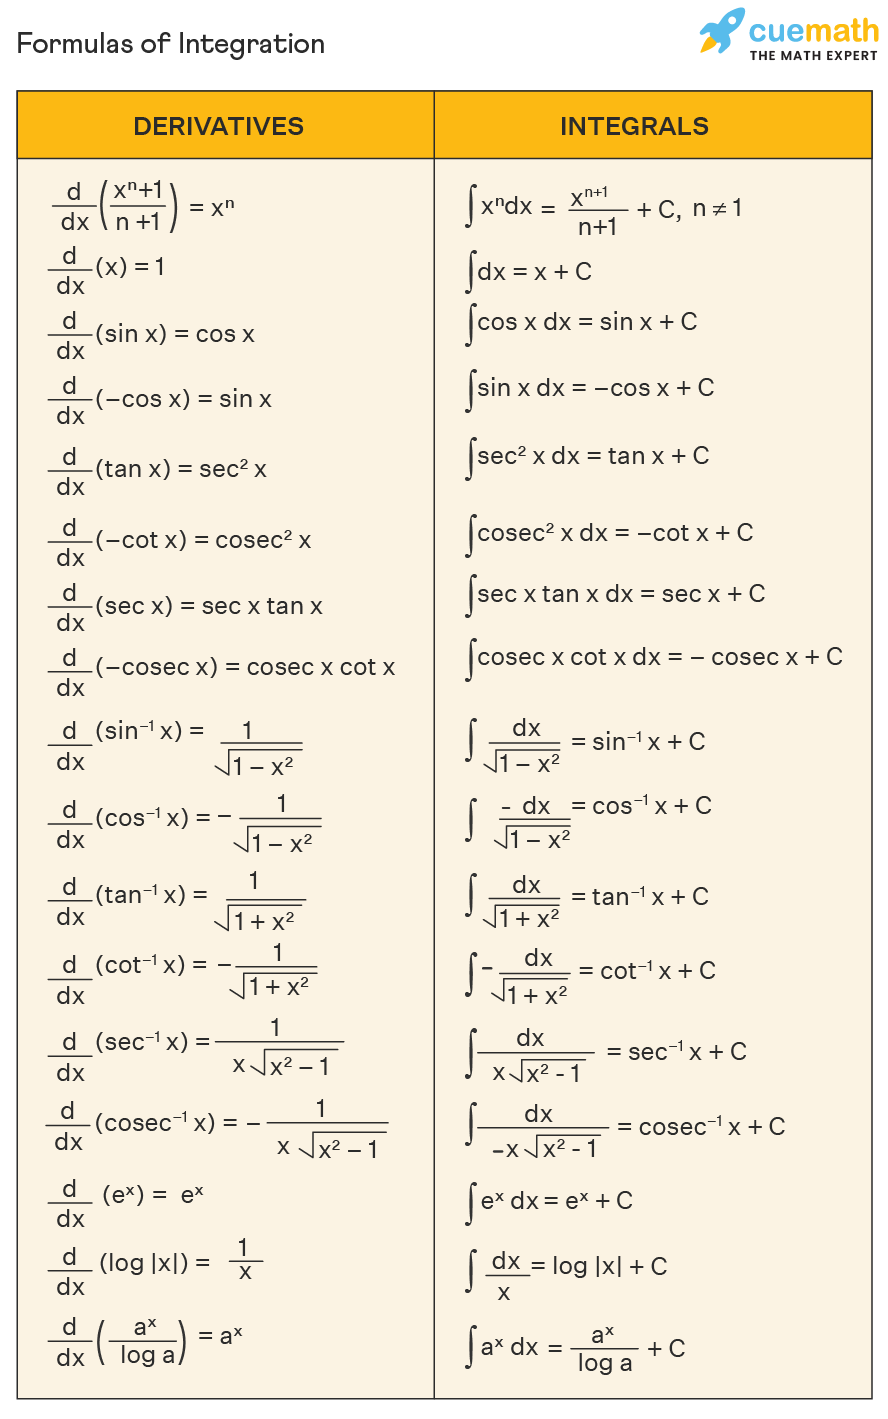 formula-of-integration-1625829942.png